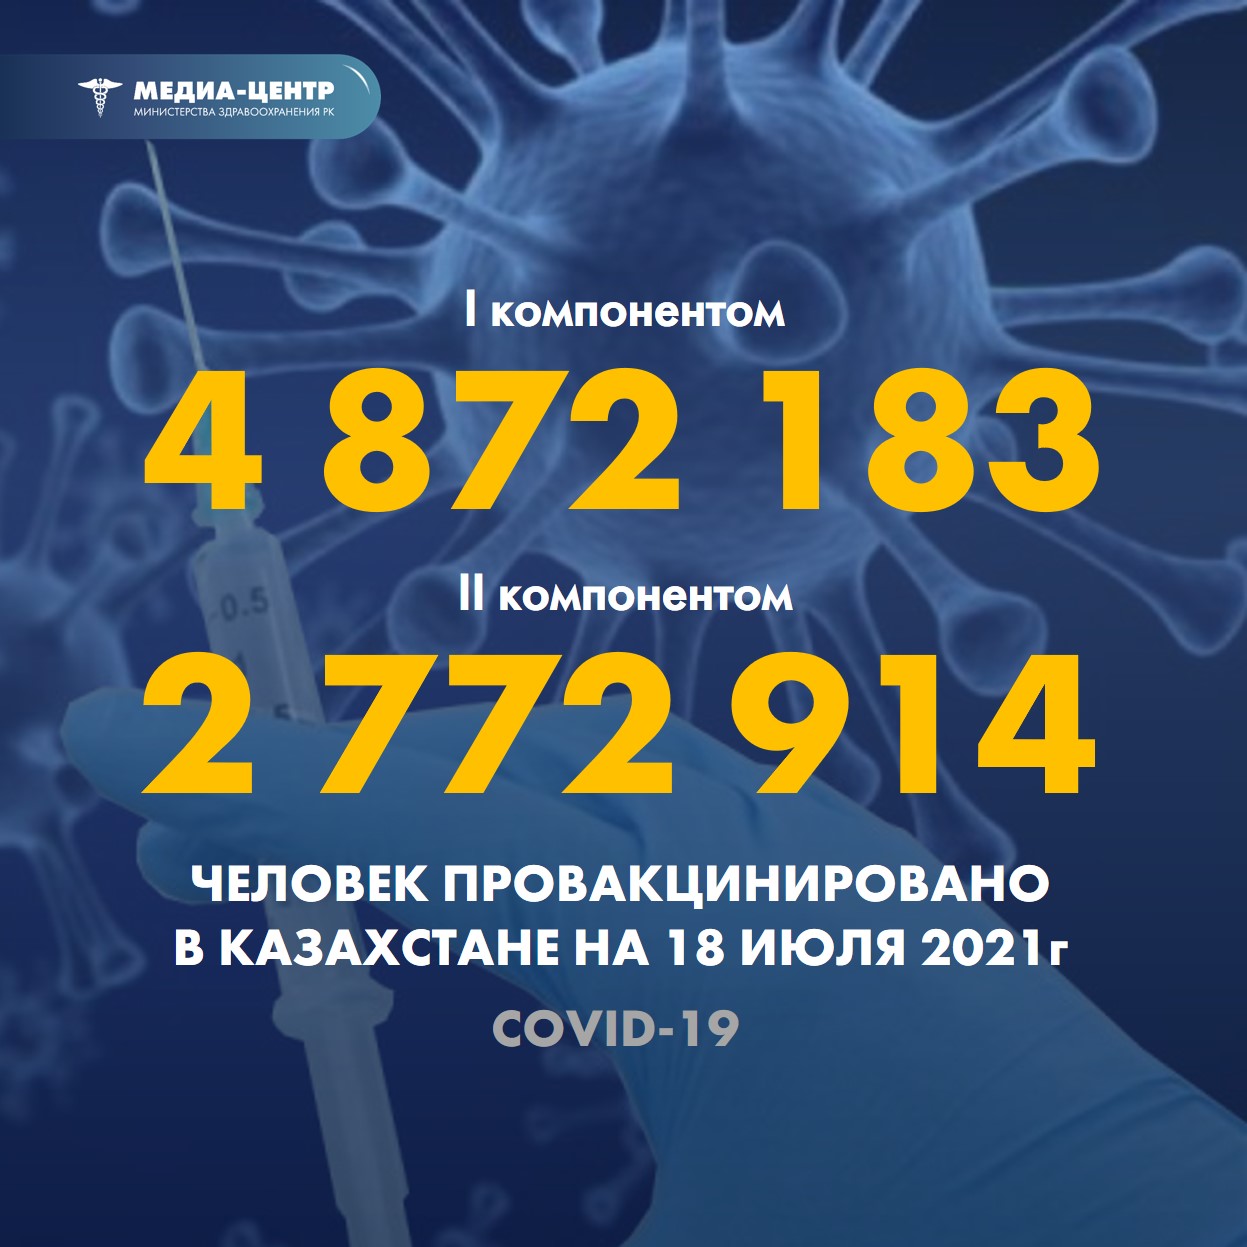 I компонентом 4 872 183 человека провакцинировано в Казахстане на 18 июля 2021 г, II компонентом 2 772 914 человек.